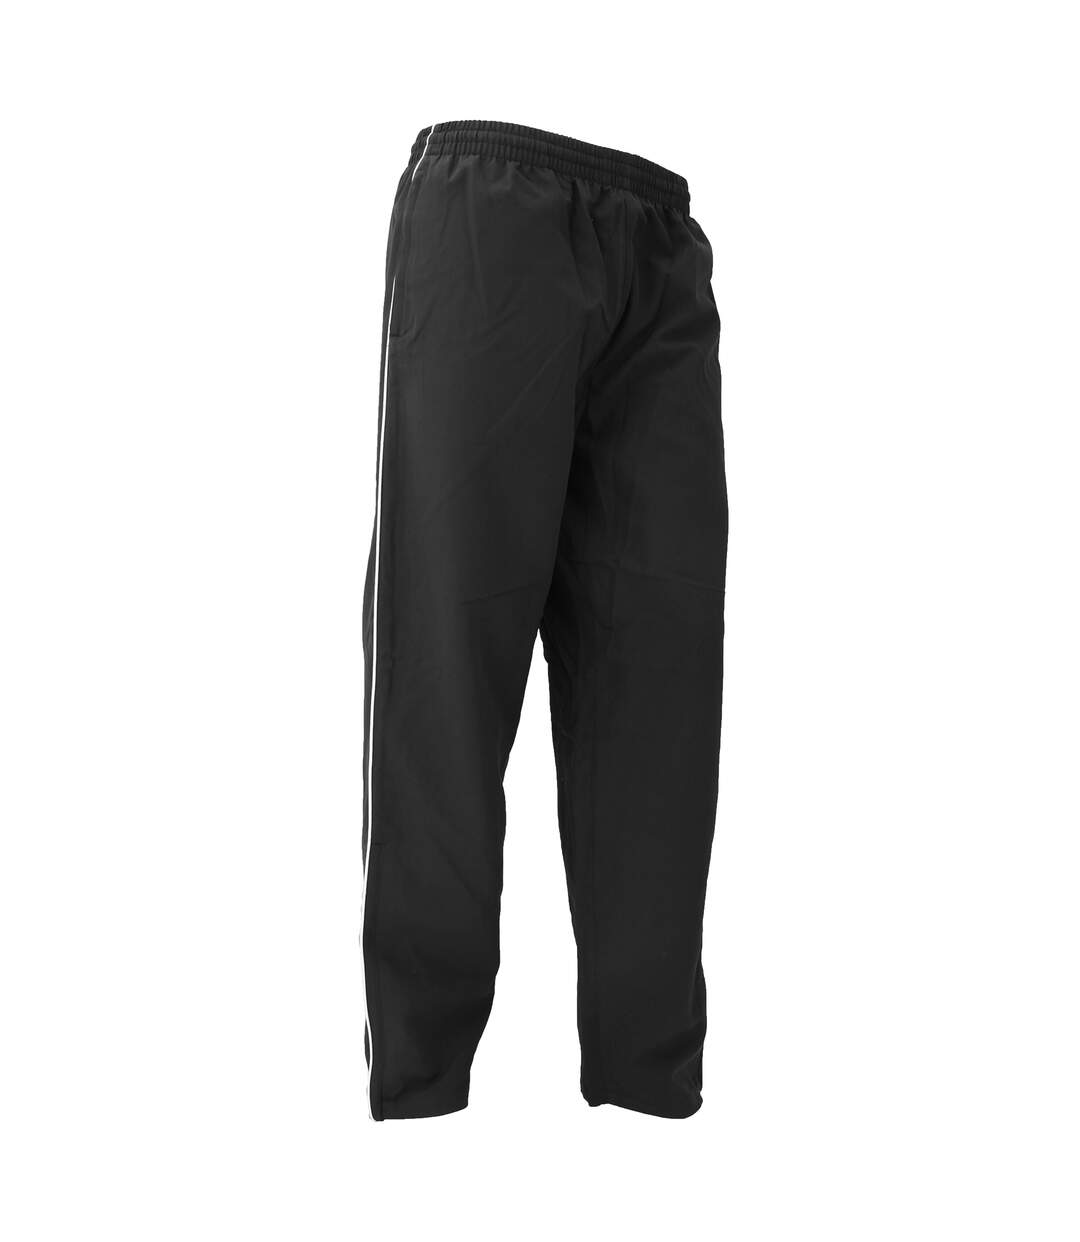 Gamegear® - Pantalon de jogging - Homme (Noir/Blanc) - UTBC445